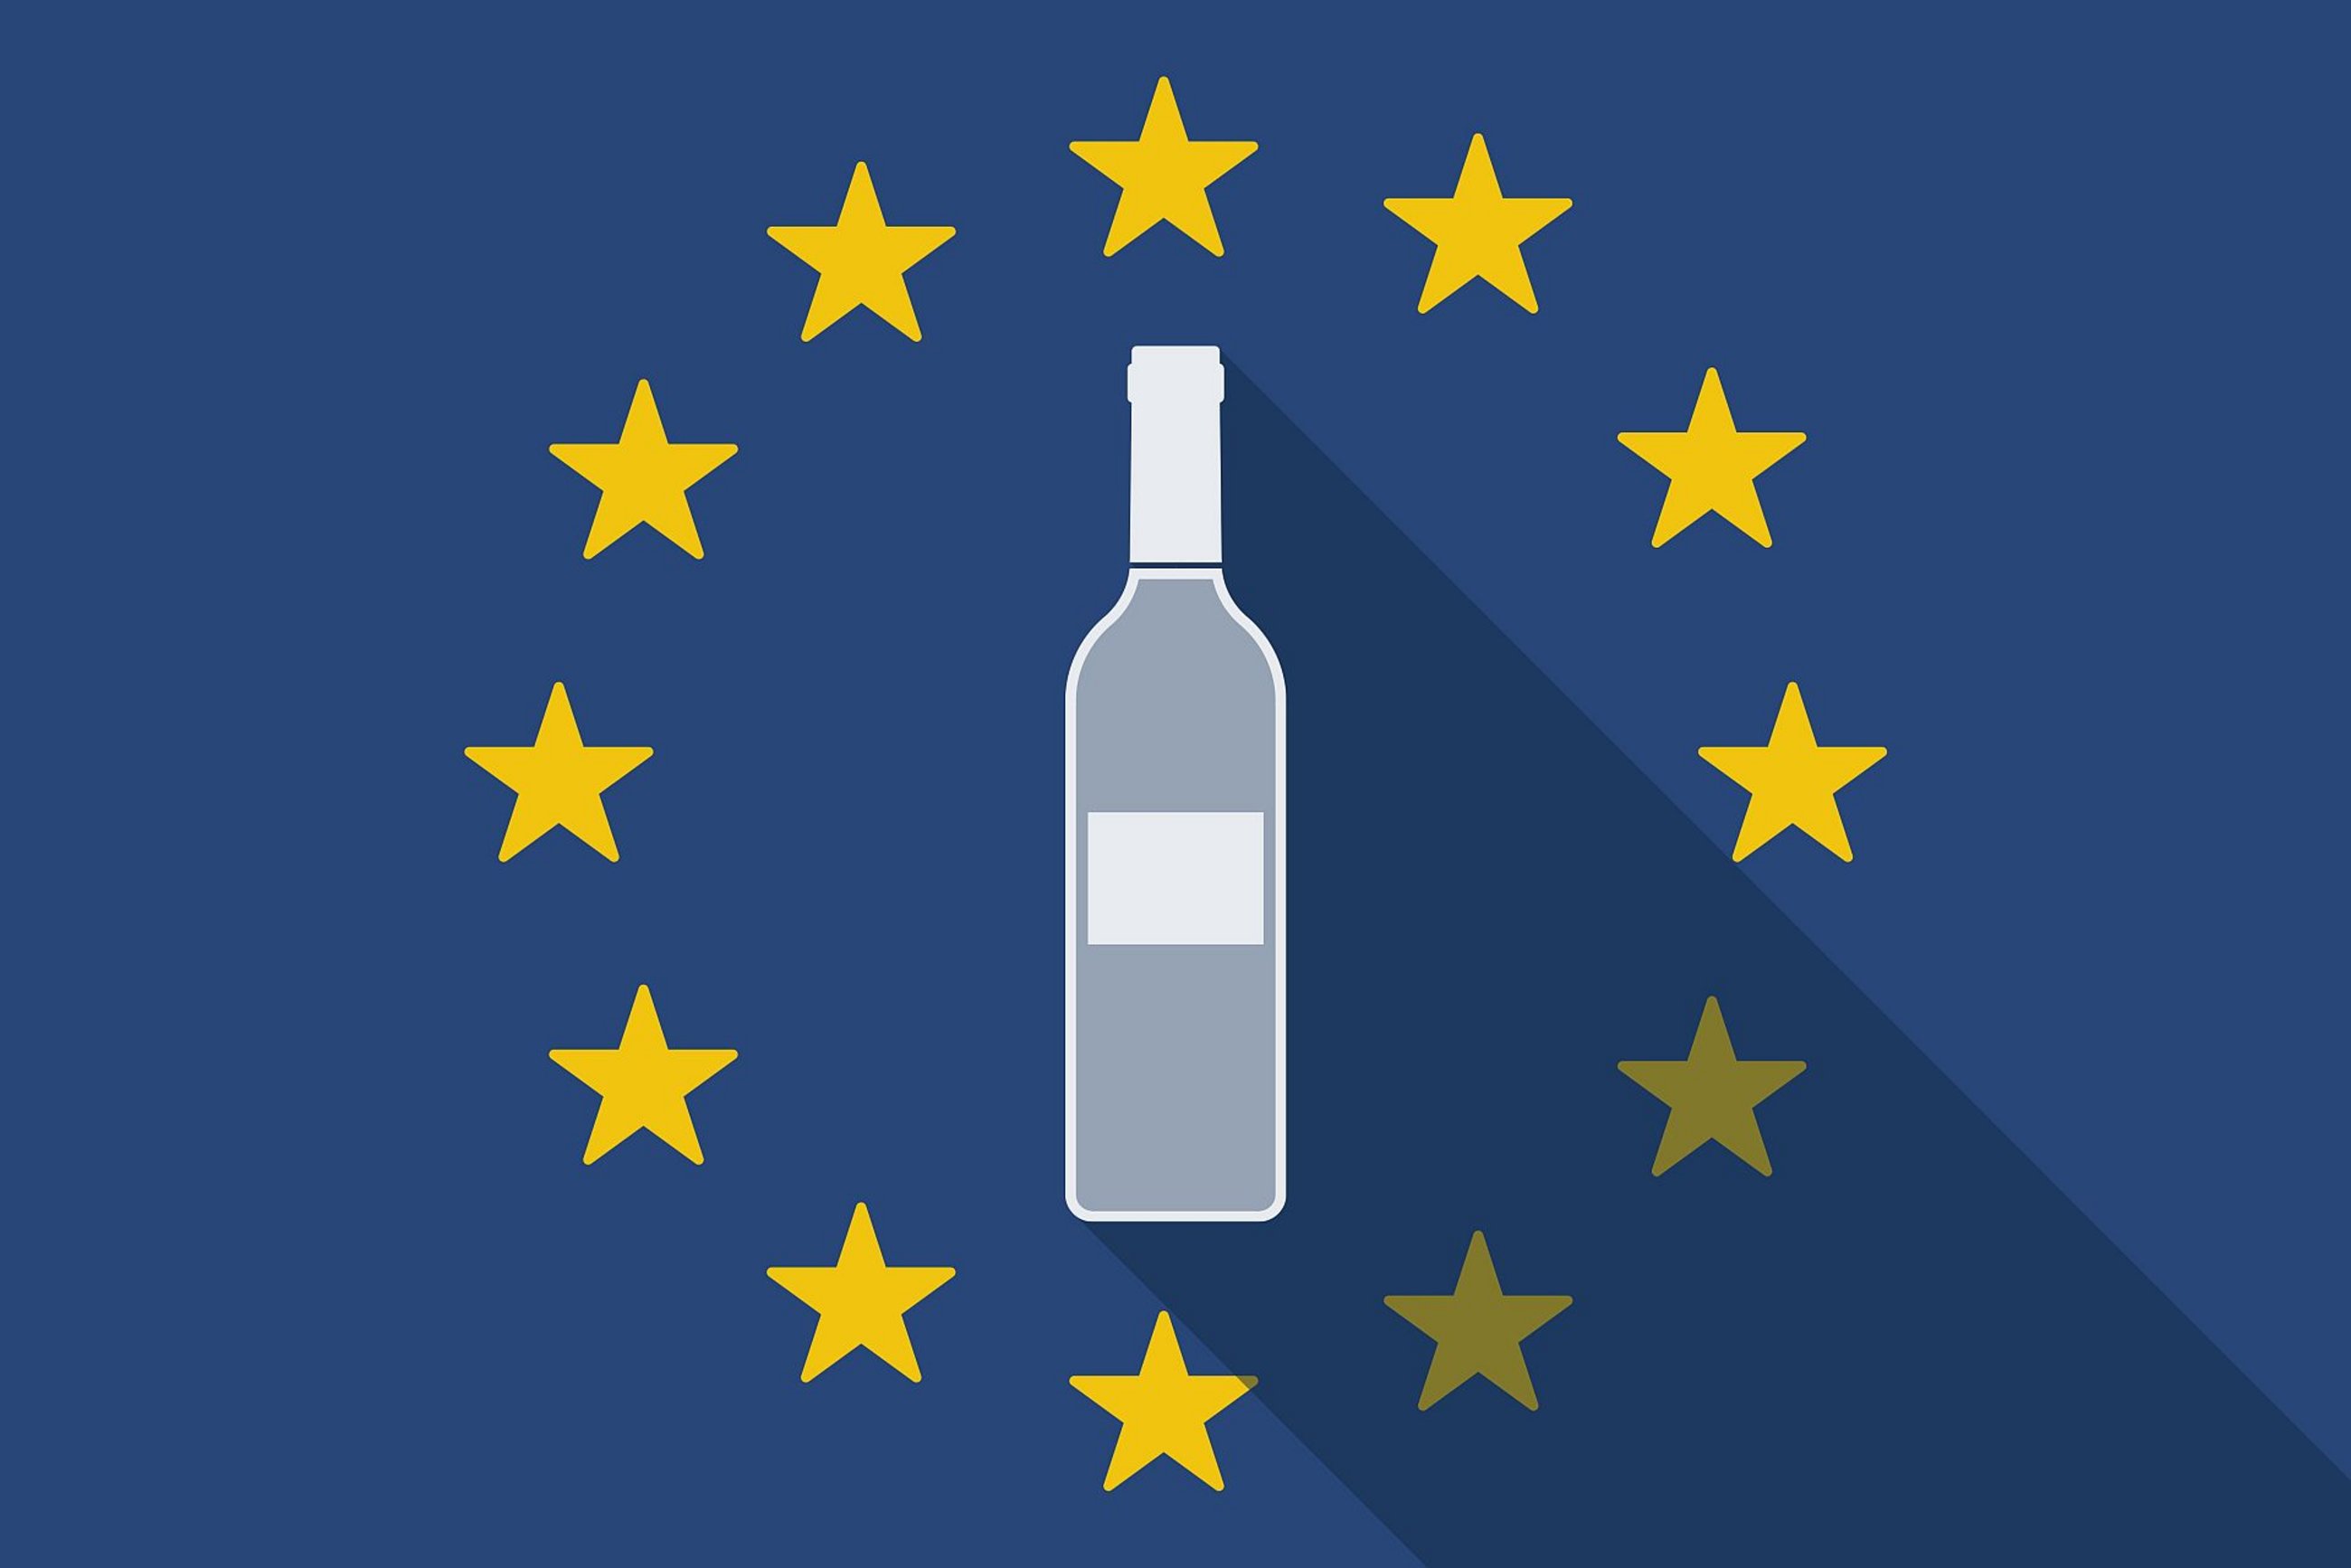 L'alcool met la santé en danger : le cep demande un étiquetage uniforme au niveau de l'UE, basé sur le modèle irlandais